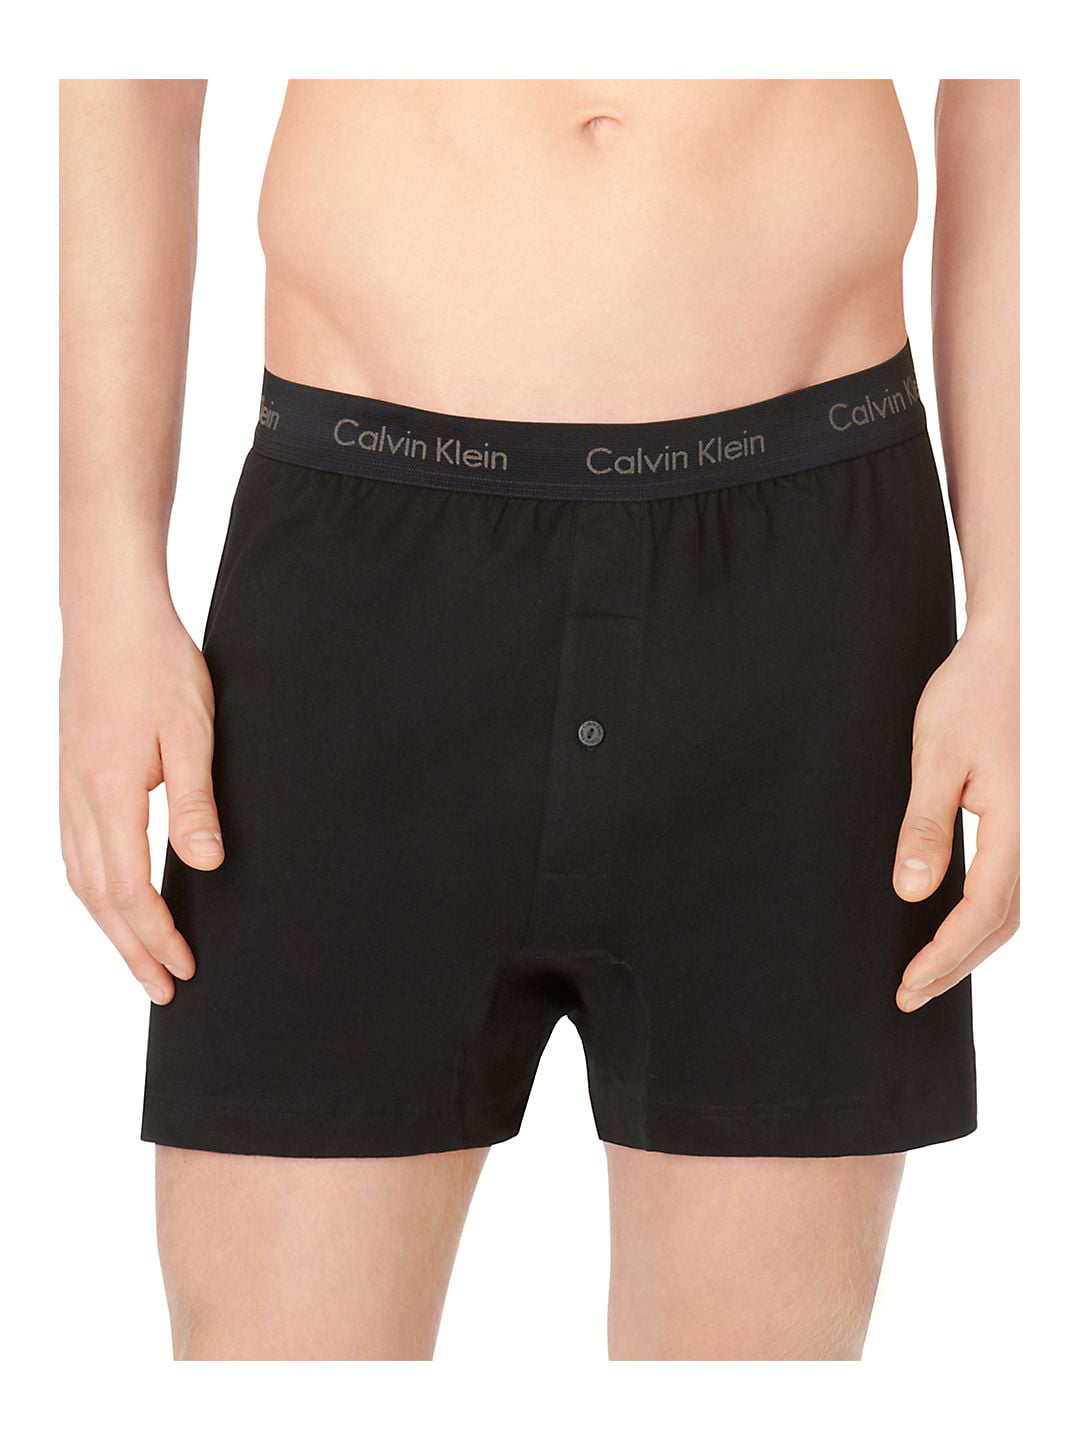 City center Expanding Return Calvin Klein Men's Cotton Classic Knit Boxer (3-Pack) - Walmart.com